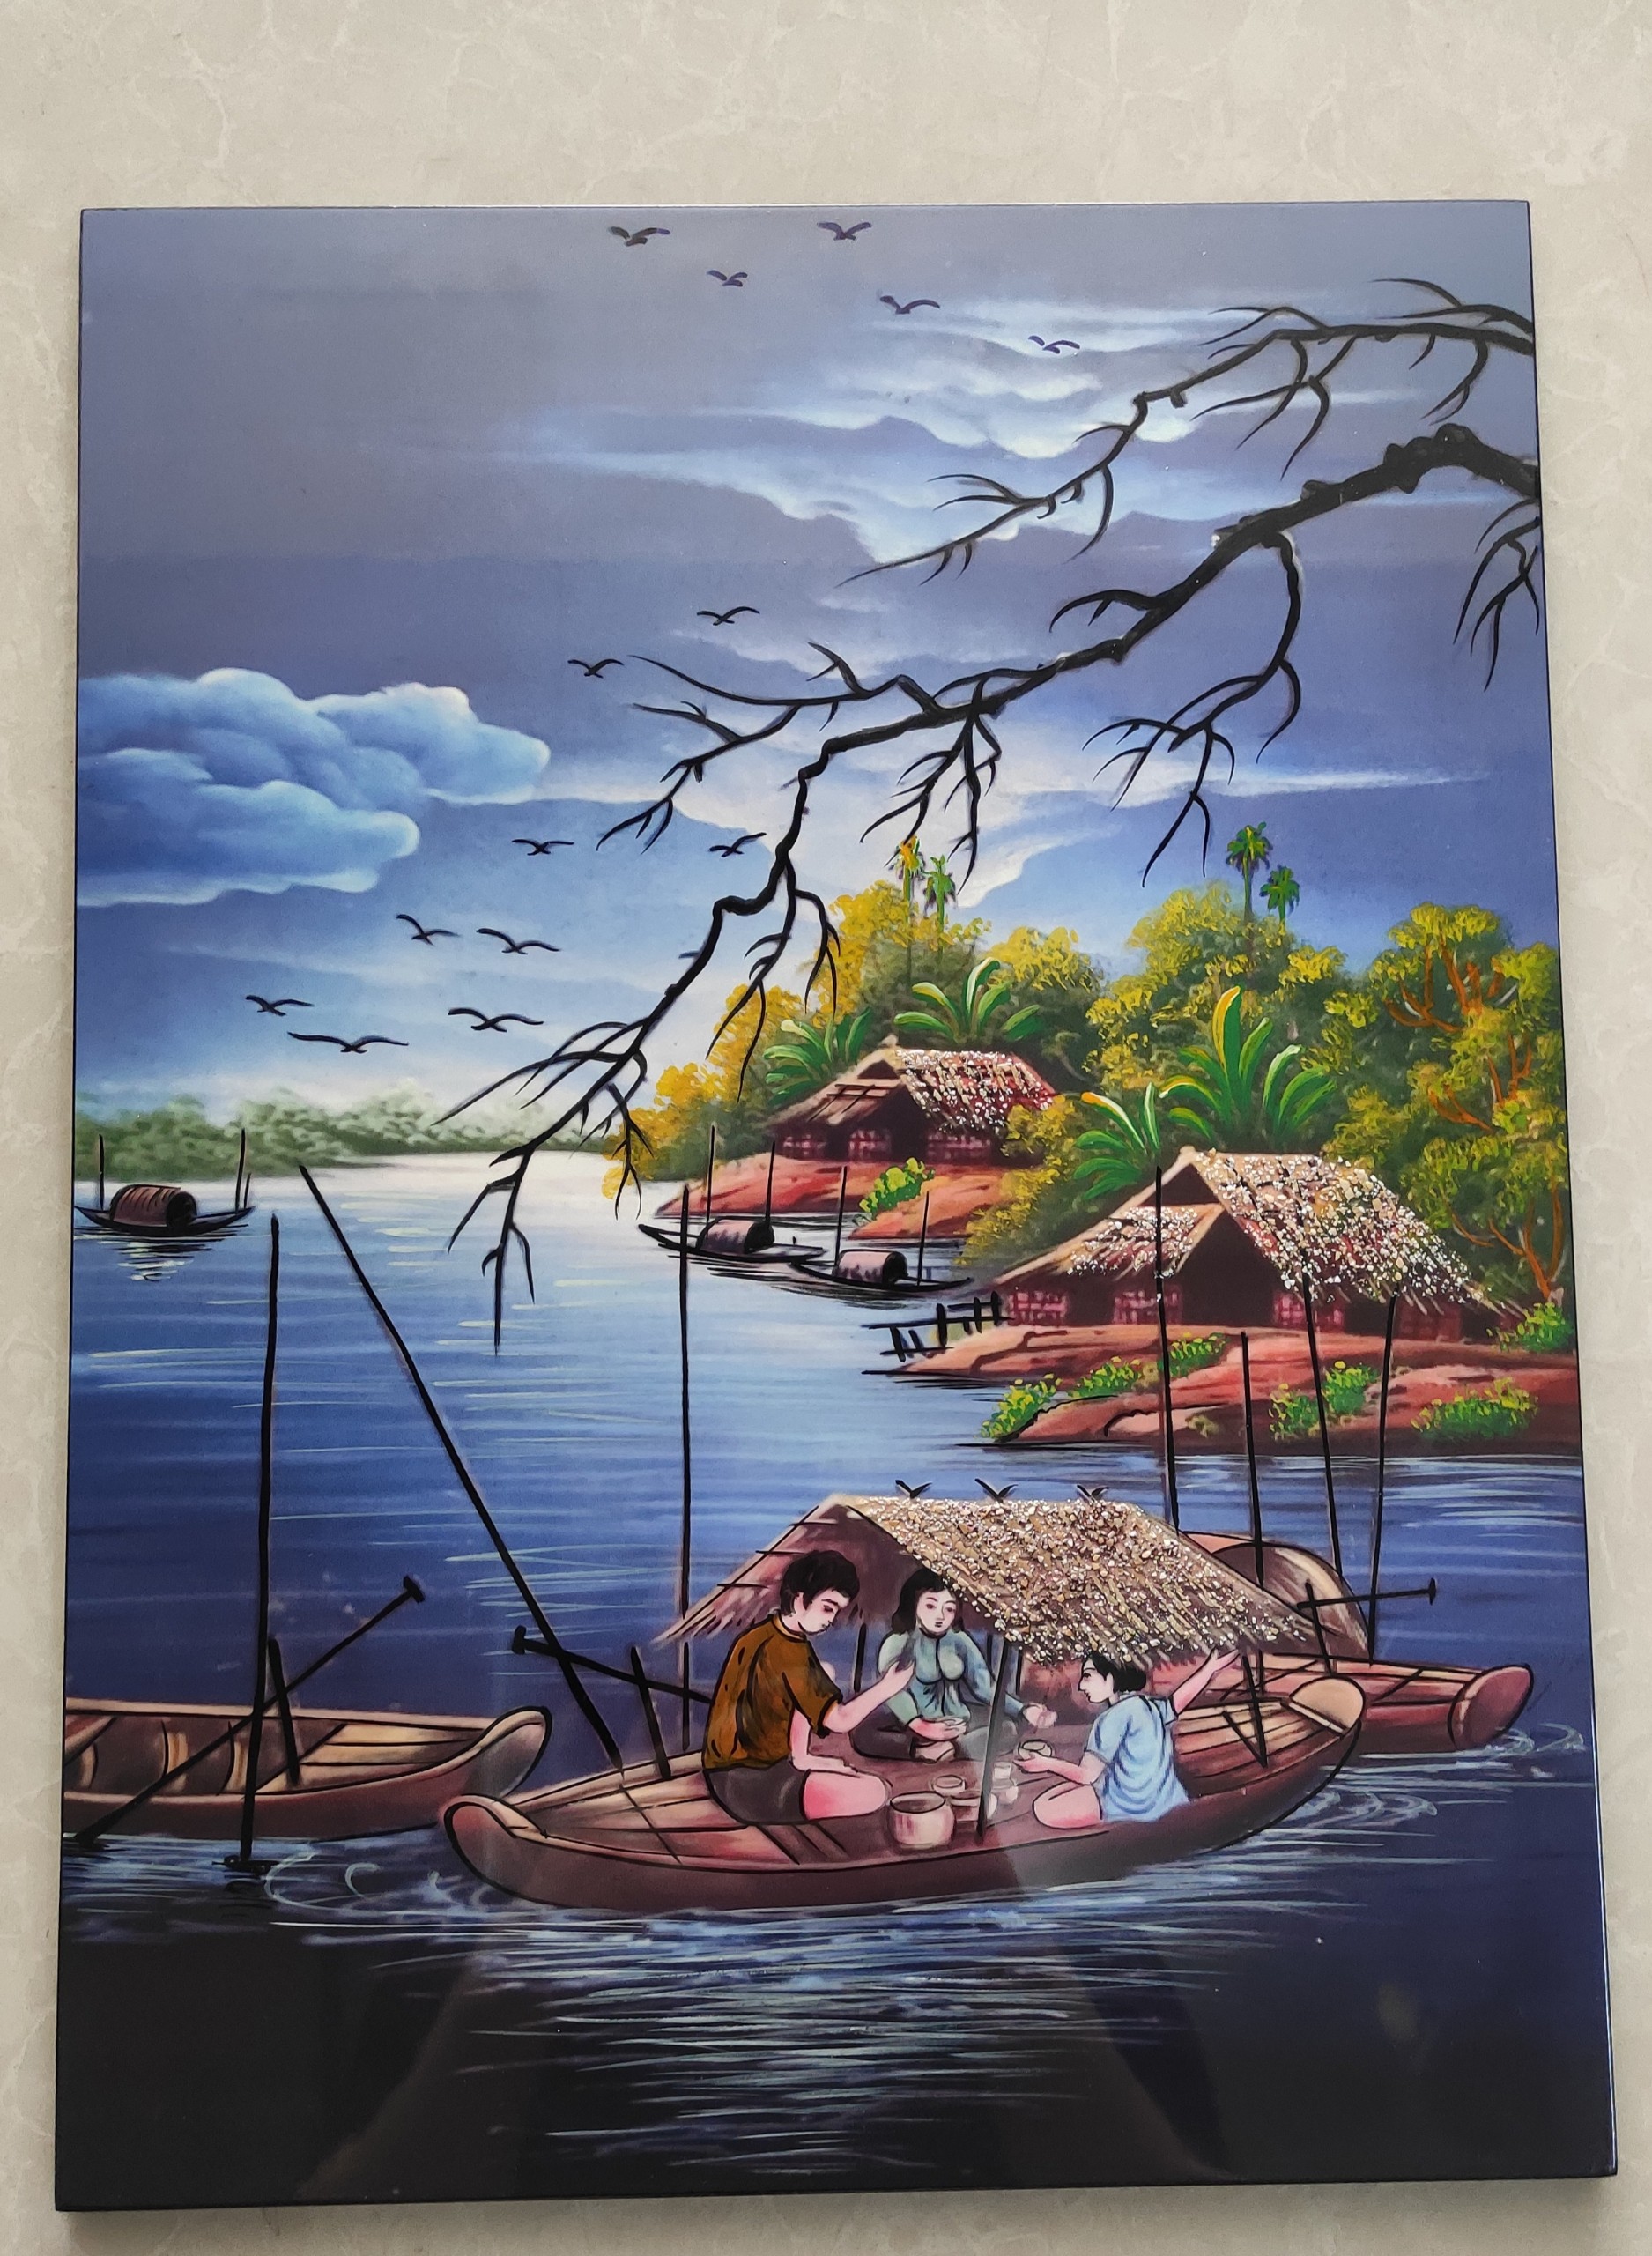 Tranh sơn mài đồng quê vẽ màu đẹp Thanh Bình Lê, hàng xuất khẩu 30x40 cm